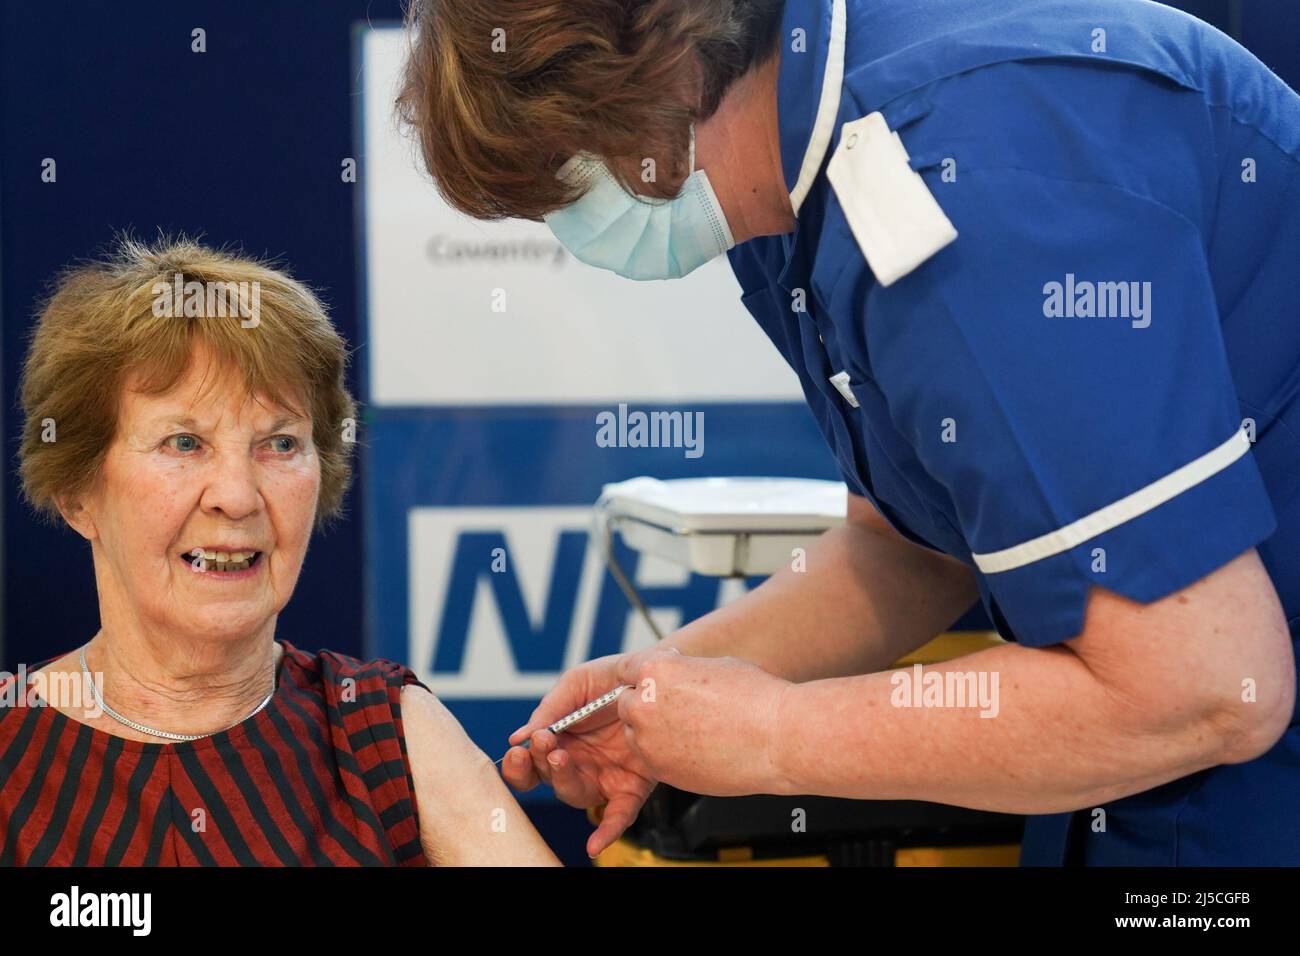 RETRANSMISE CORRIGEANT L'ÂGE DE 91 À 92 Margaret Keenan, 92 ans, reçoit son coup de rappel de printemps Covid-19 à l'hôpital universitaire de Coventry. Mme Keenan, connue sous le nom de Maggie, a été la première patiente du Royaume-Uni à recevoir le vaccin Pfizer/BioNtech Covid-19. Date de la photo: Vendredi 22 avril 2022. Banque D'Images